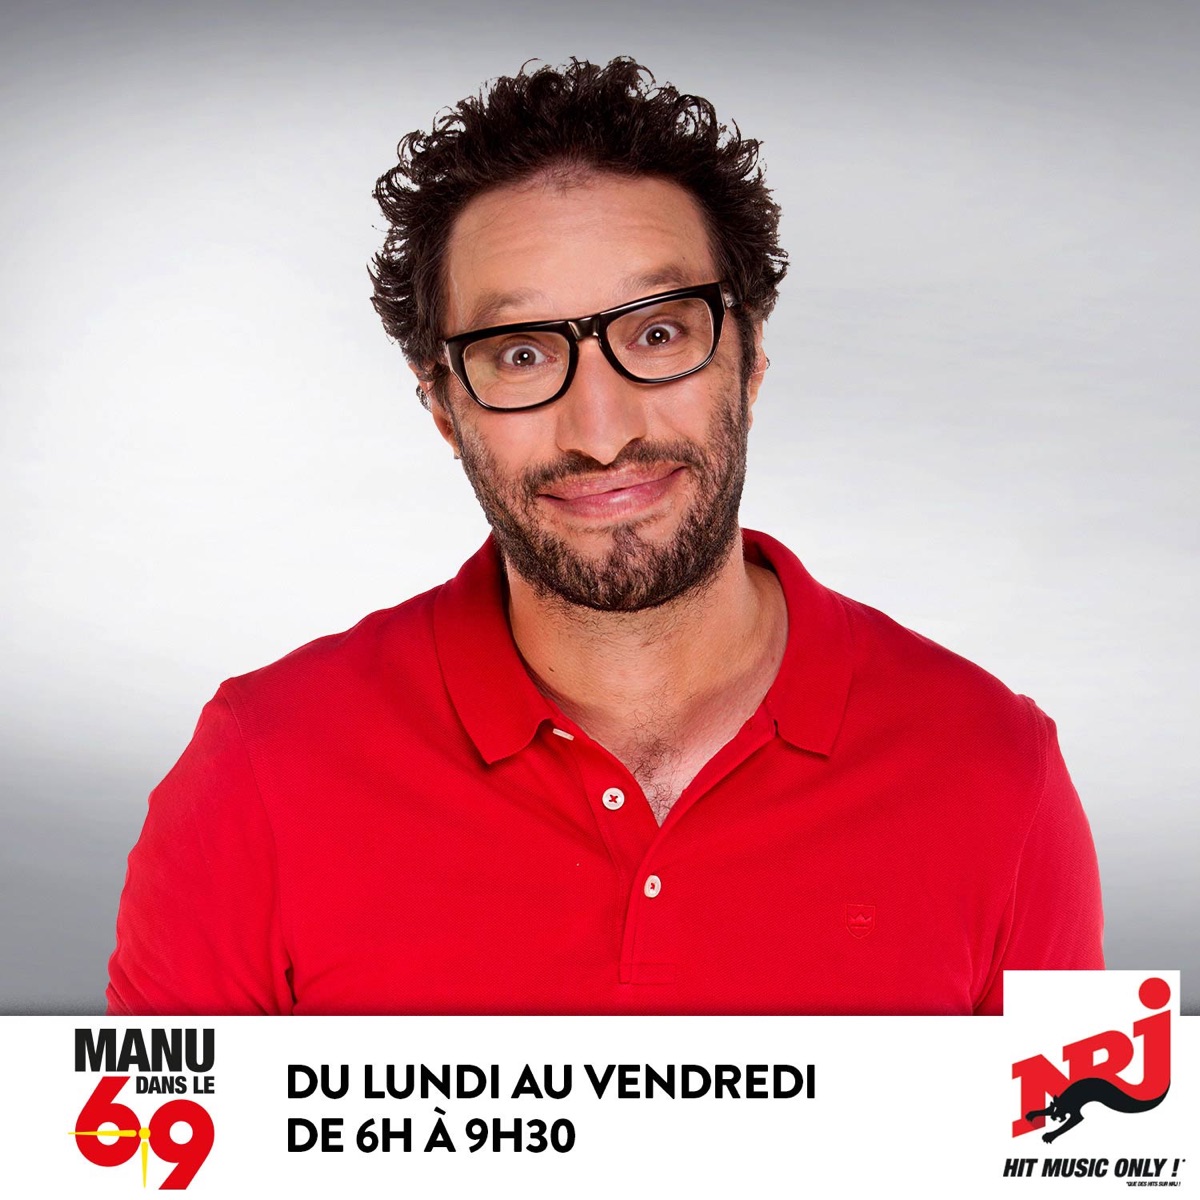 Aude Manu Dans Le 6 10 Manu dans le 6/10 : Le best-of – Podcast – Podtail